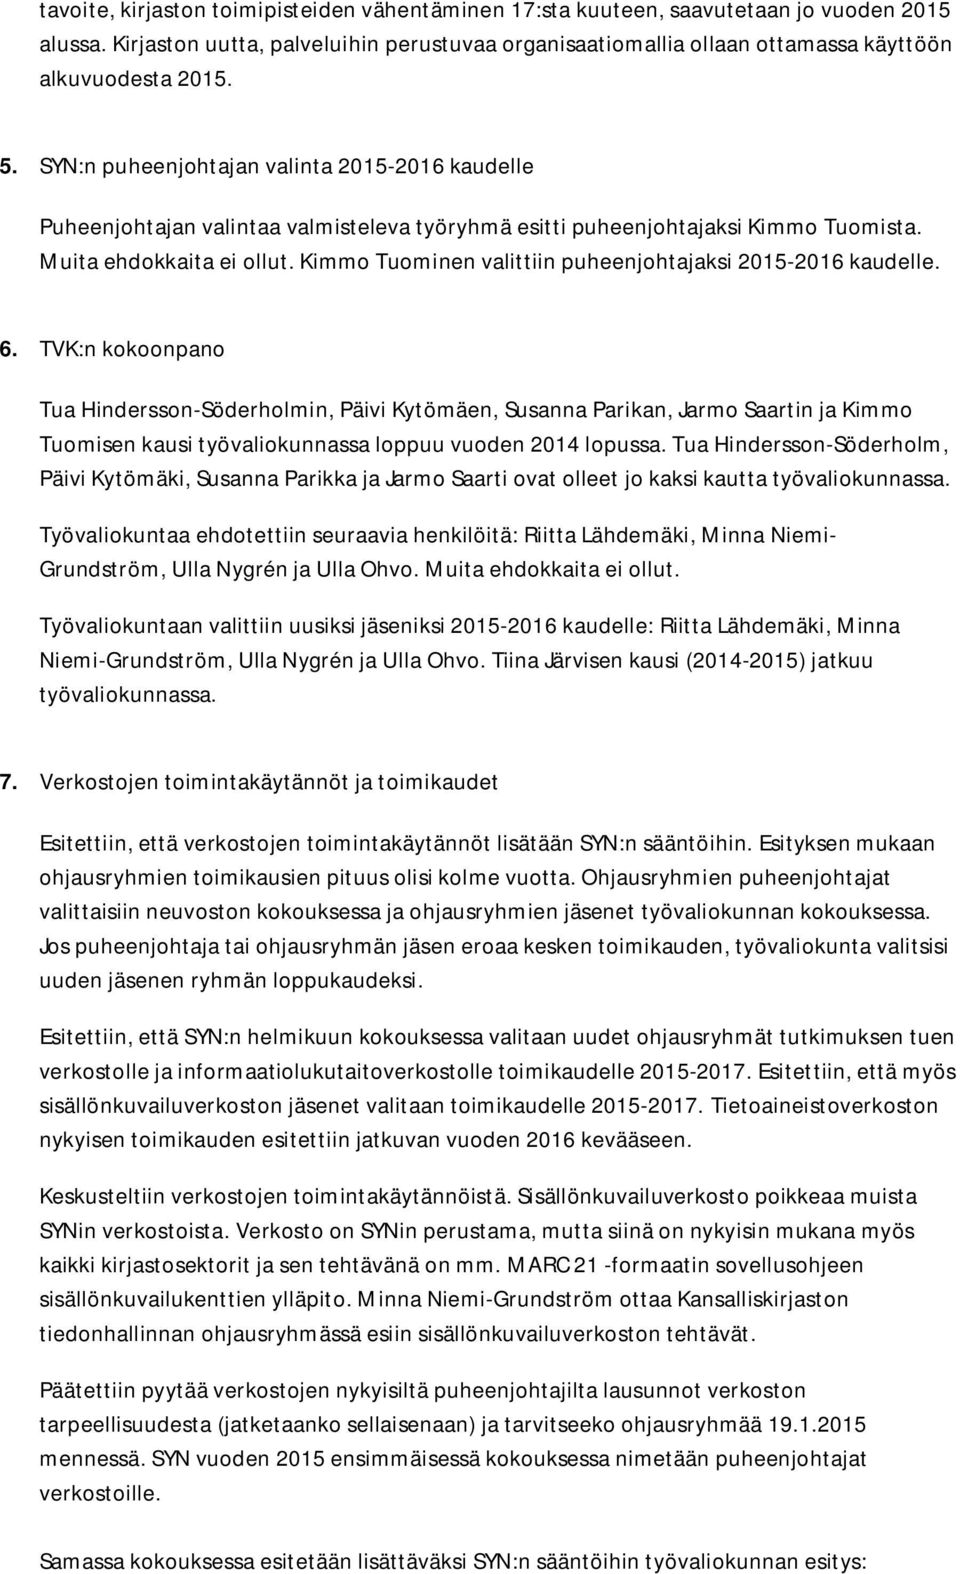 SYN:n puheenjohtajan valinta 2015-2016 kaudelle Puheenjohtajan valintaa valmisteleva työryhmä esitti puheenjohtajaksi Kimmo Tuomista. Muita ehdokkaita ei ollut.